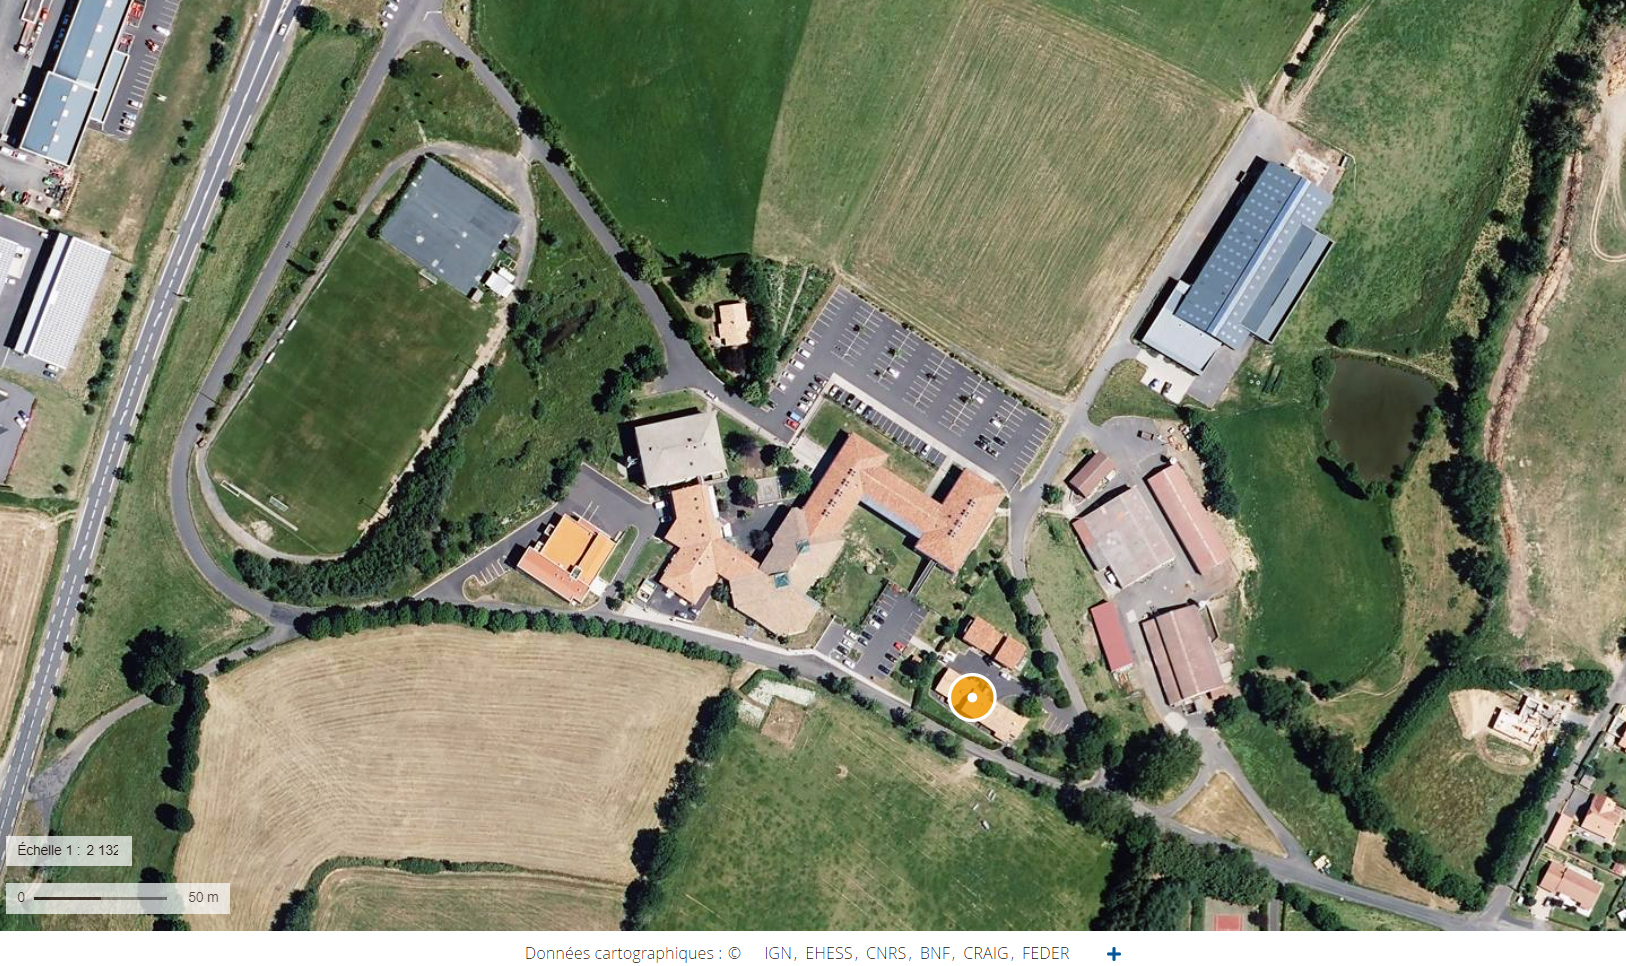 Centre de formation professionelle agricole puis lycée agricole Louis-Mallet, actuellement lycée agricole des Hautes-Terres